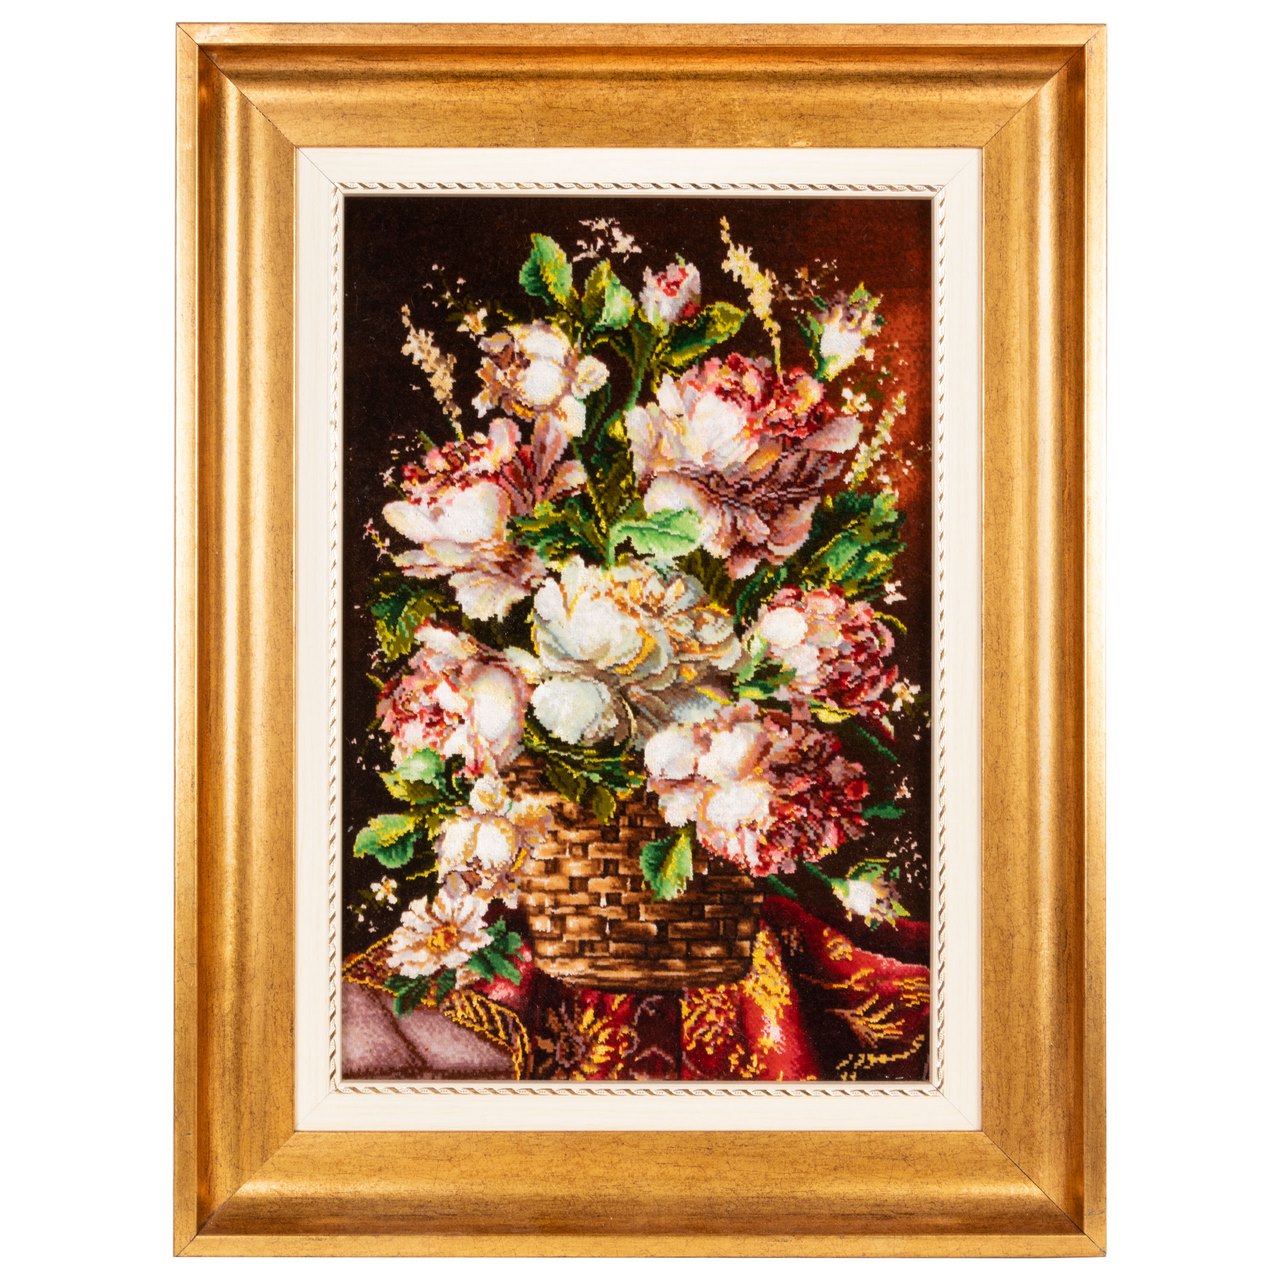 تابلو فرش دستباف سی پرشیا مدل گل در گلدان حصیری کد 902837